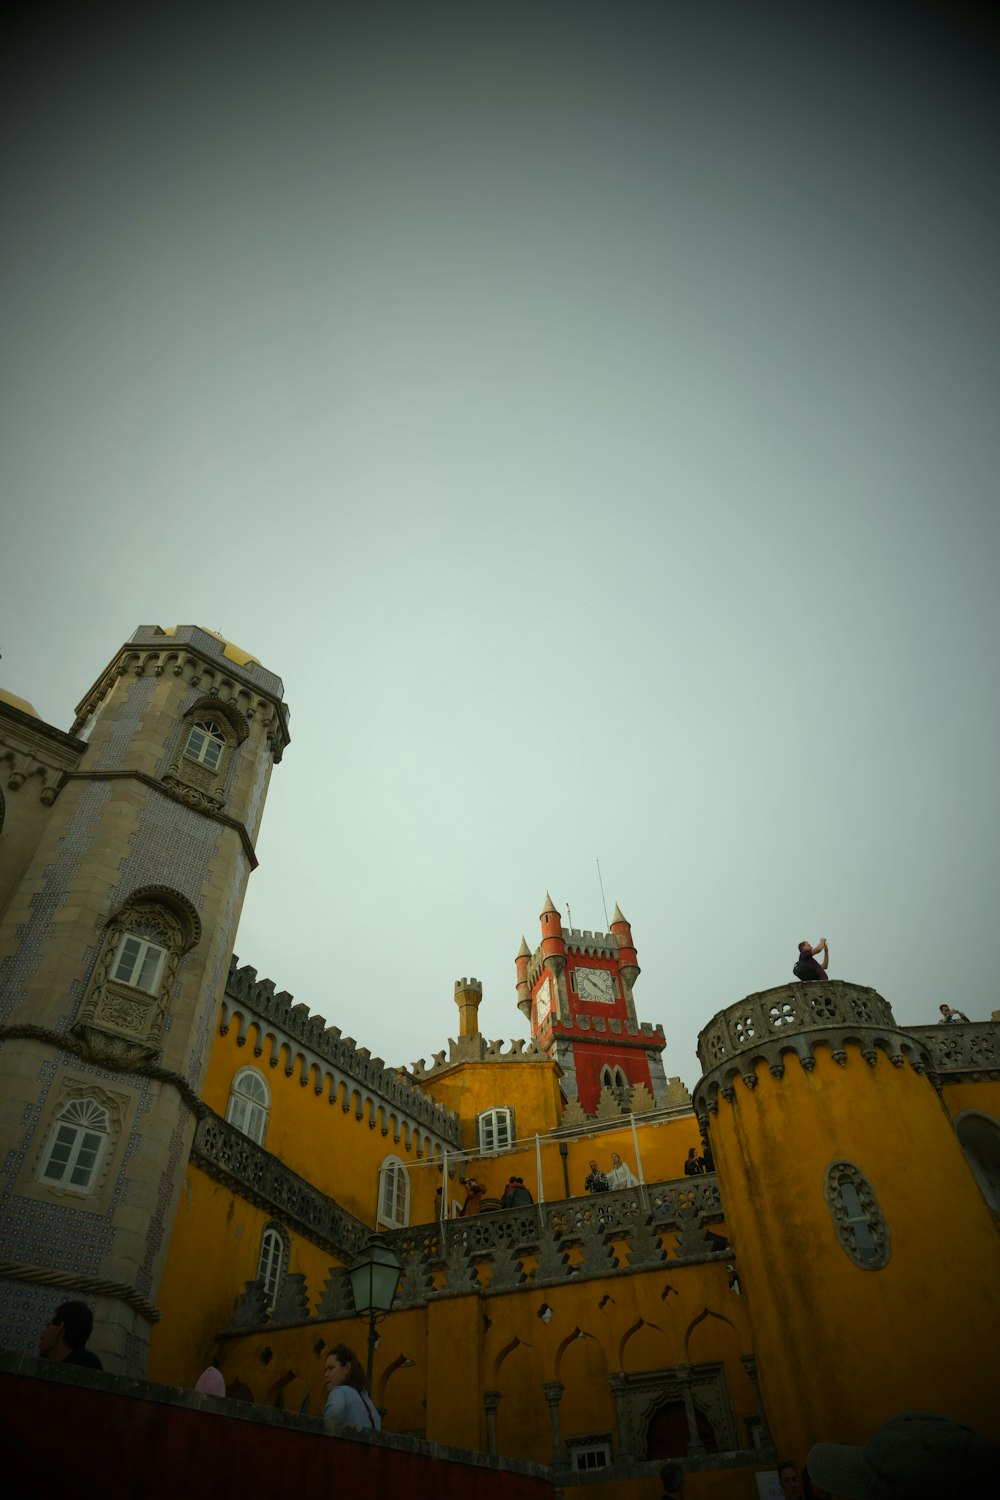 Un grande castello giallo con una torre dell'orologio